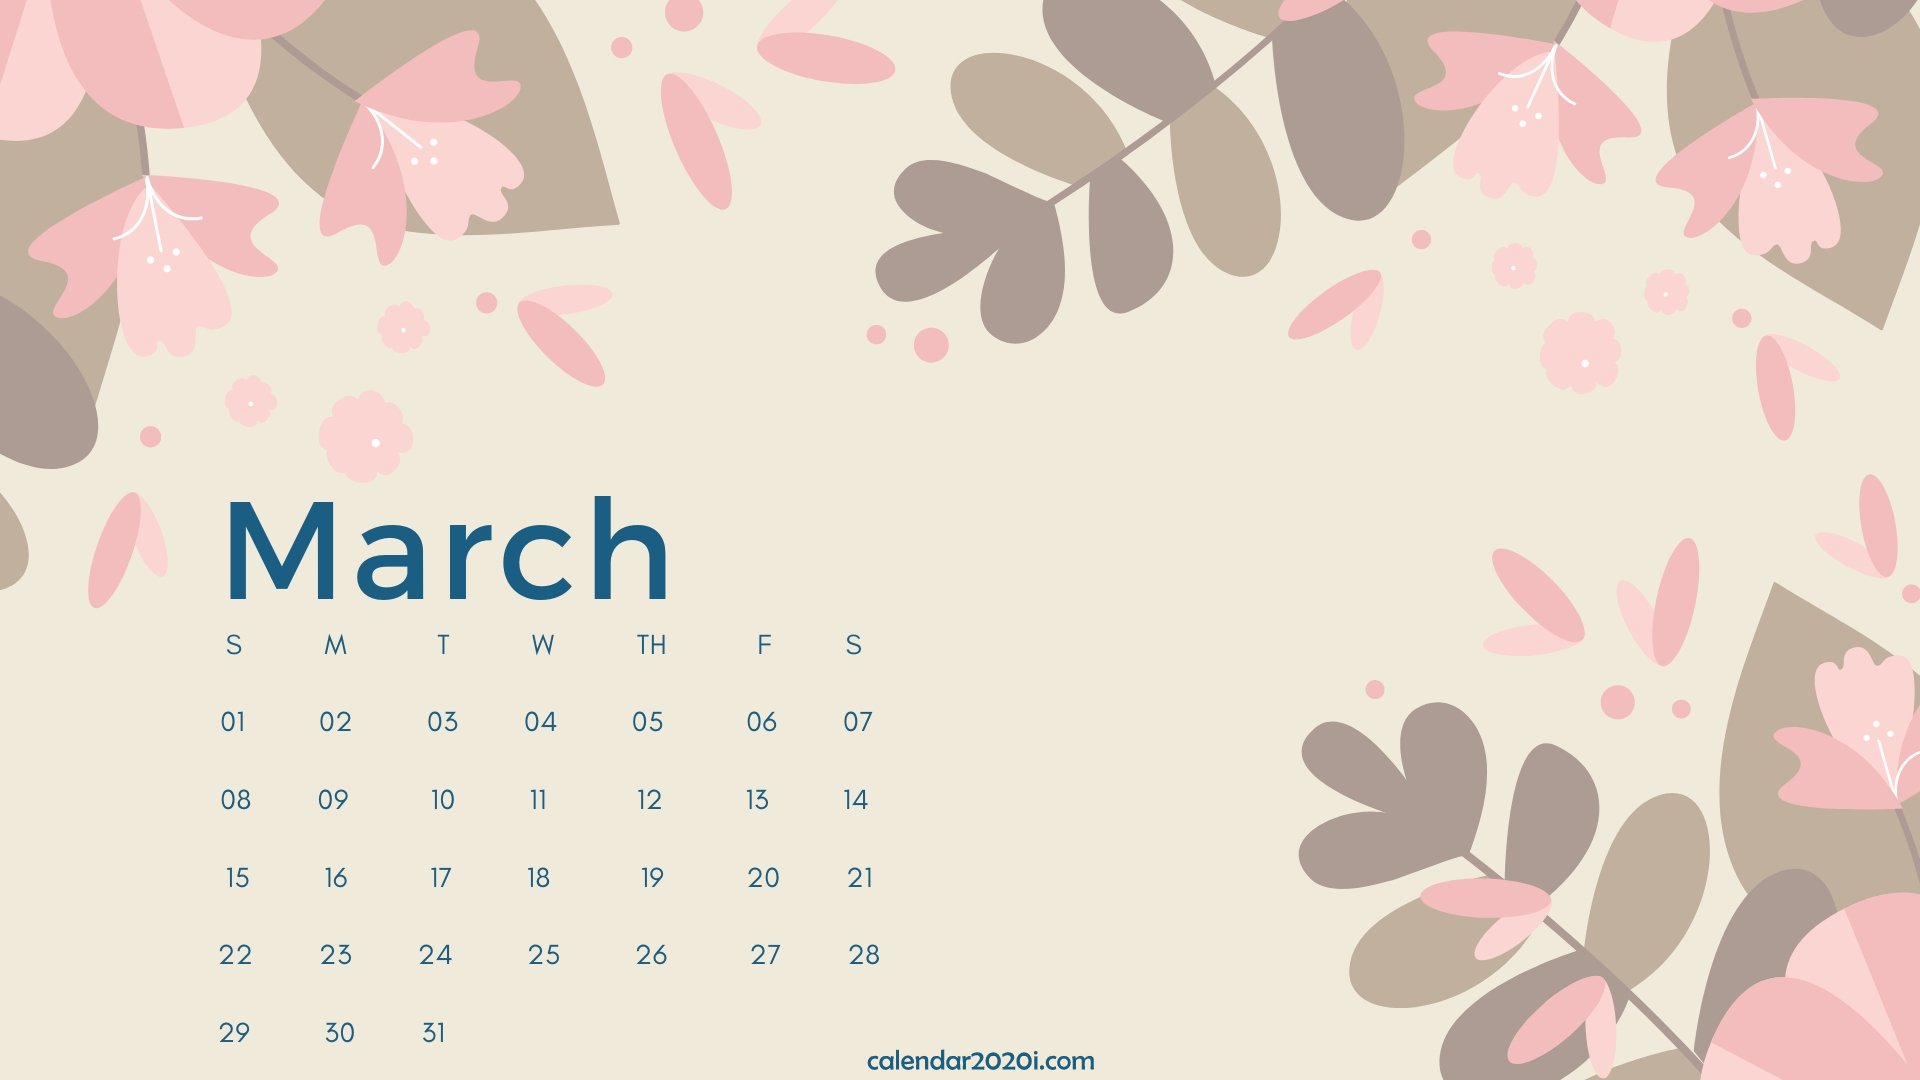 2020 Calendar Monthly HD Wallpapers Calendar 2020 1920x1080